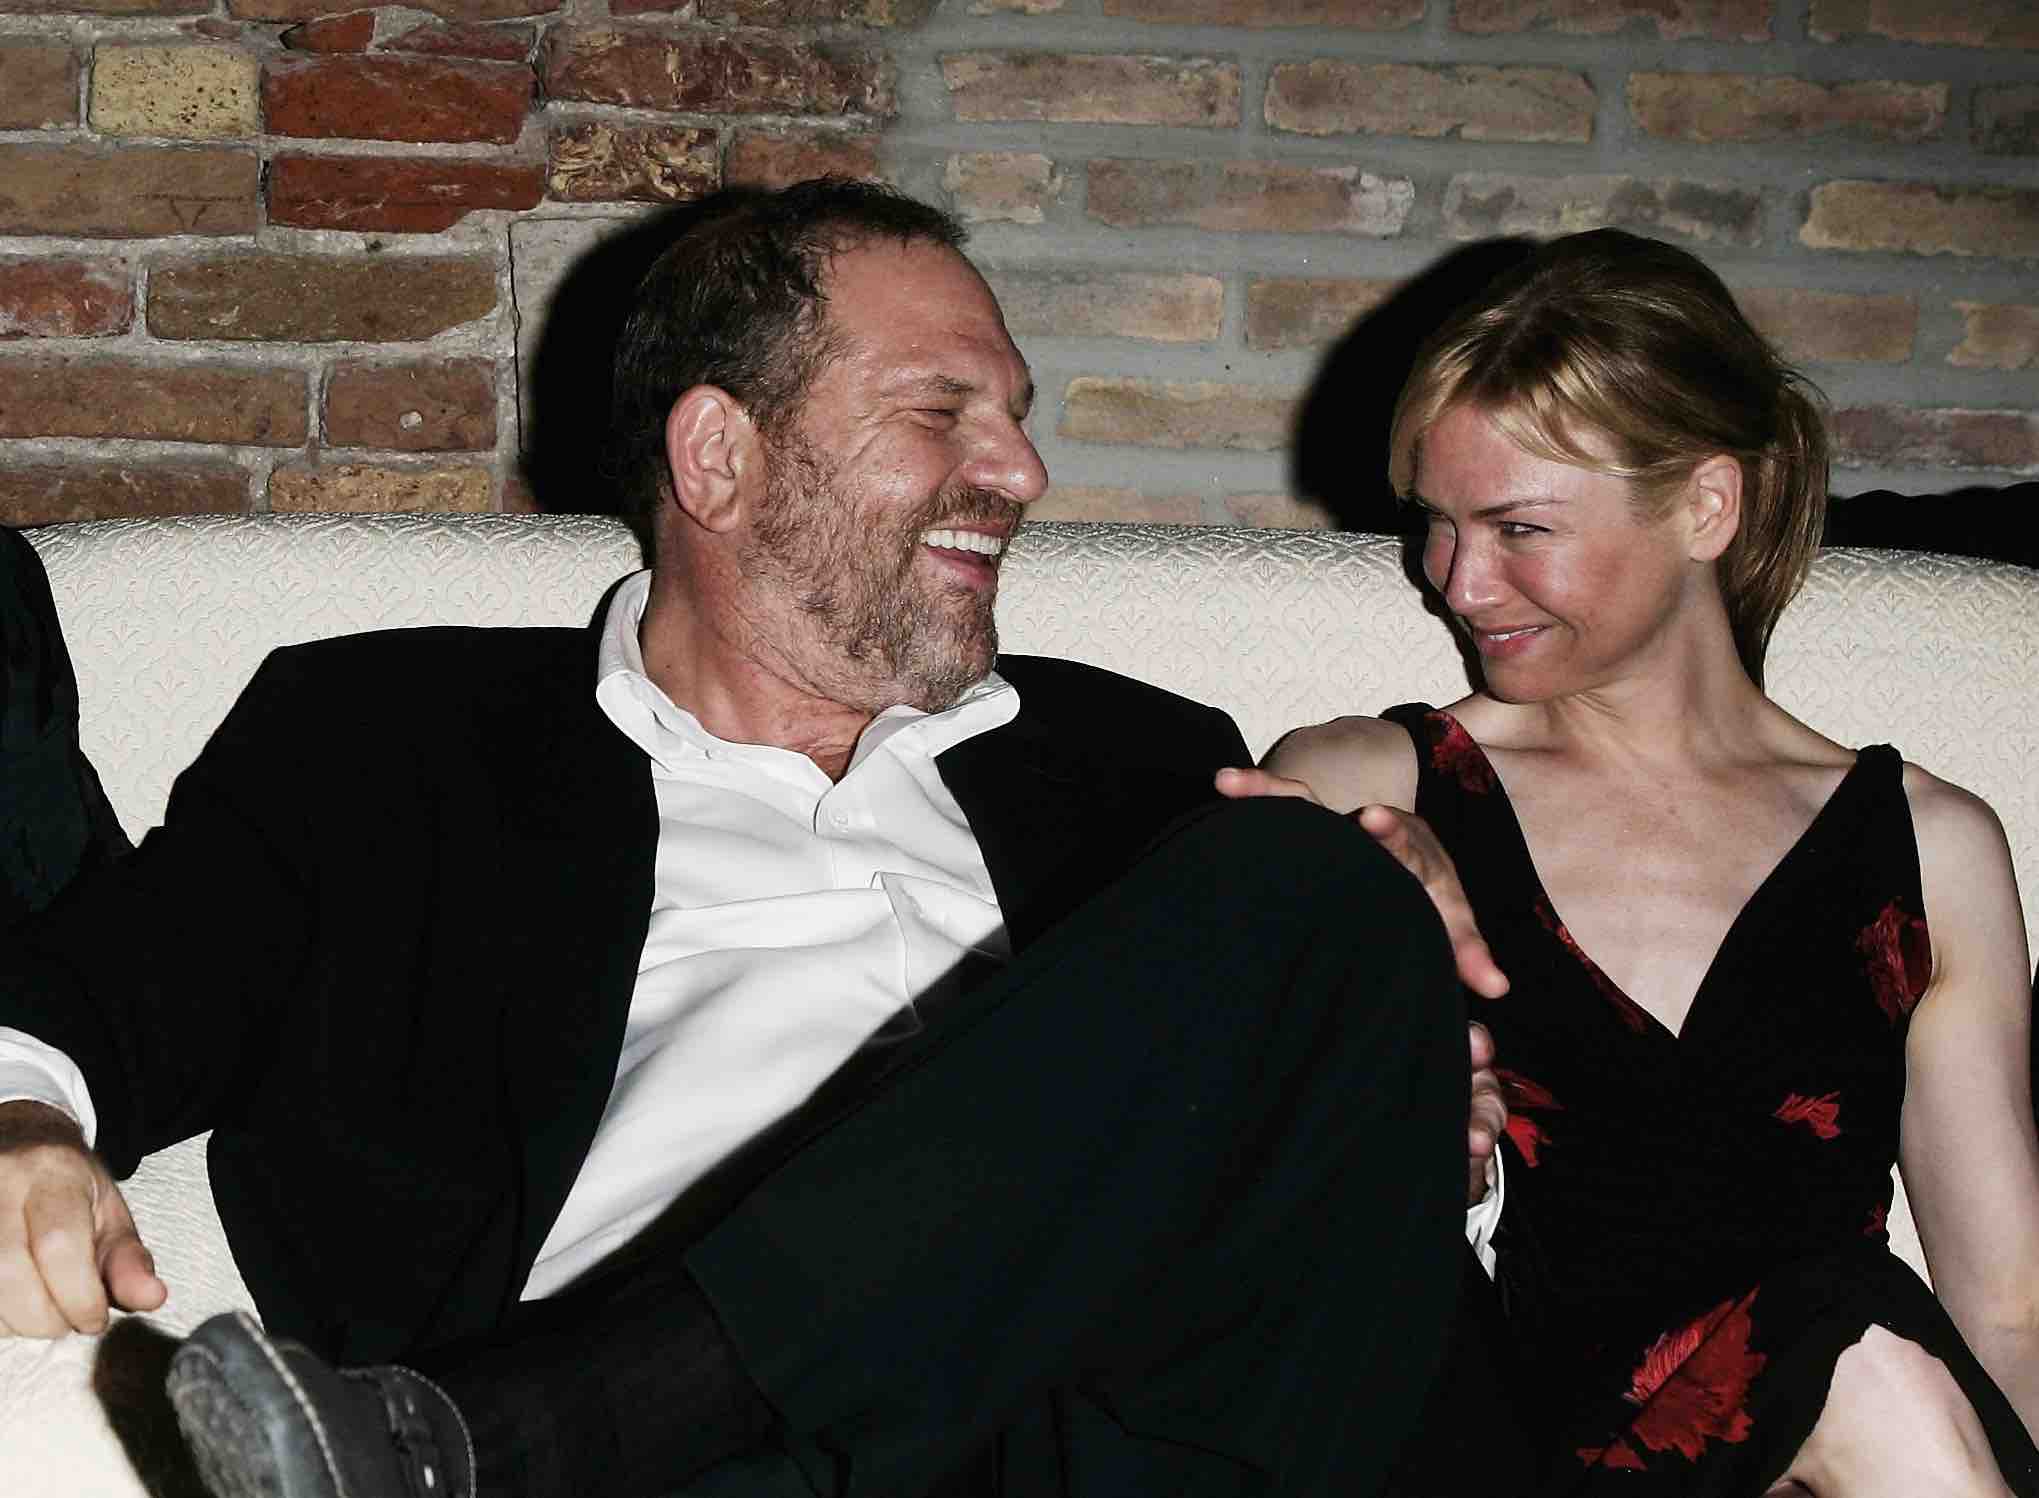 Renee Zellweger denies ever giving Harvey Weinstein sexual favours